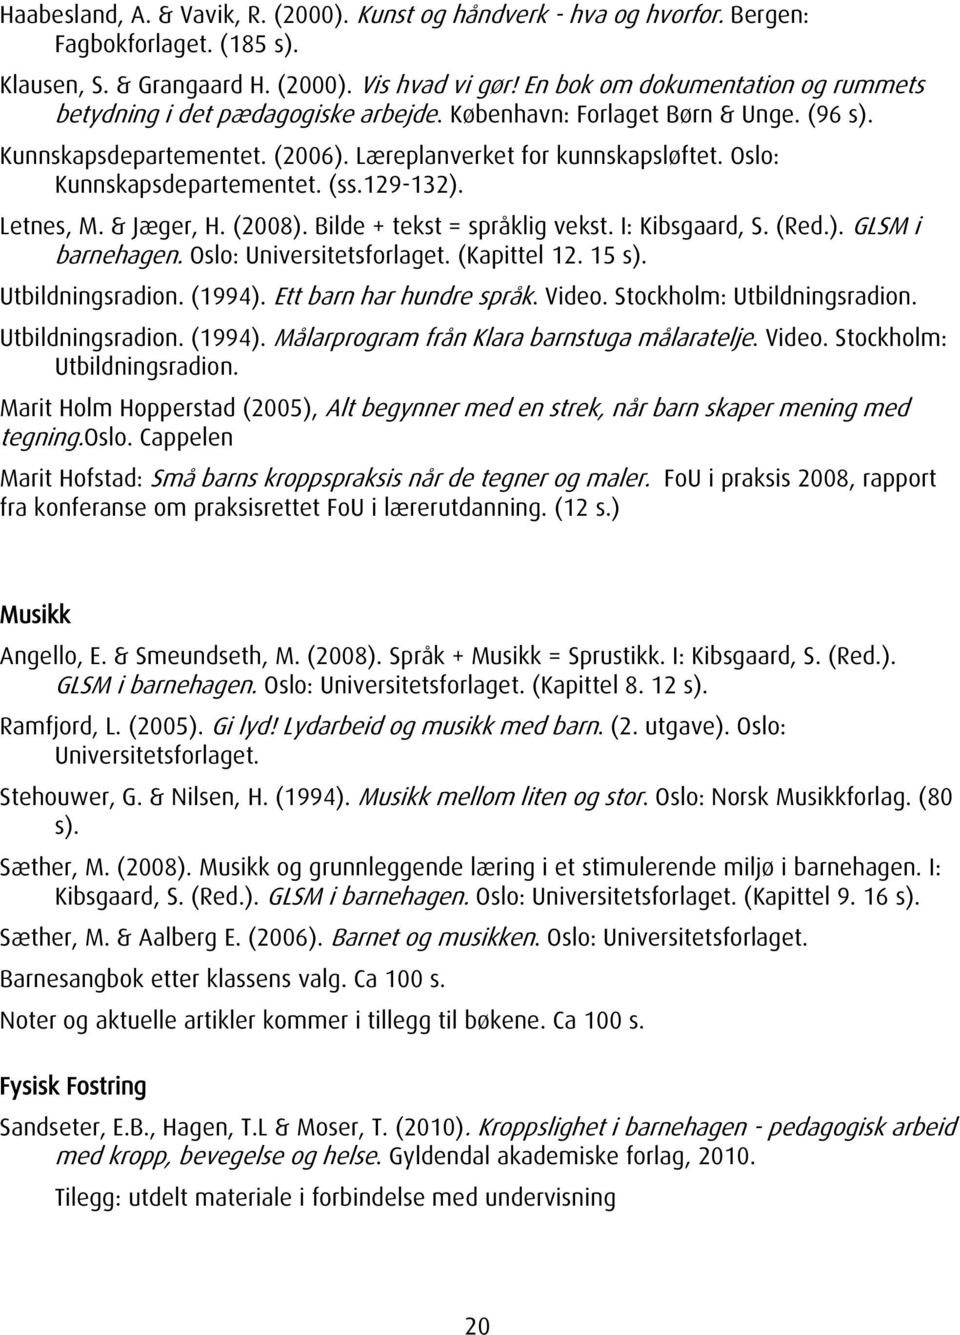 Oslo: Kunnskapsdepartementet. (ss.129-132). Letnes, M. & Jæger, H. (2008). Bilde + tekst = språklig vekst. I: Kibsgaard, S. (Red.). GLSM i barnehagen. Oslo: Universitetsforlaget. (Kapittel 12. 15 s).